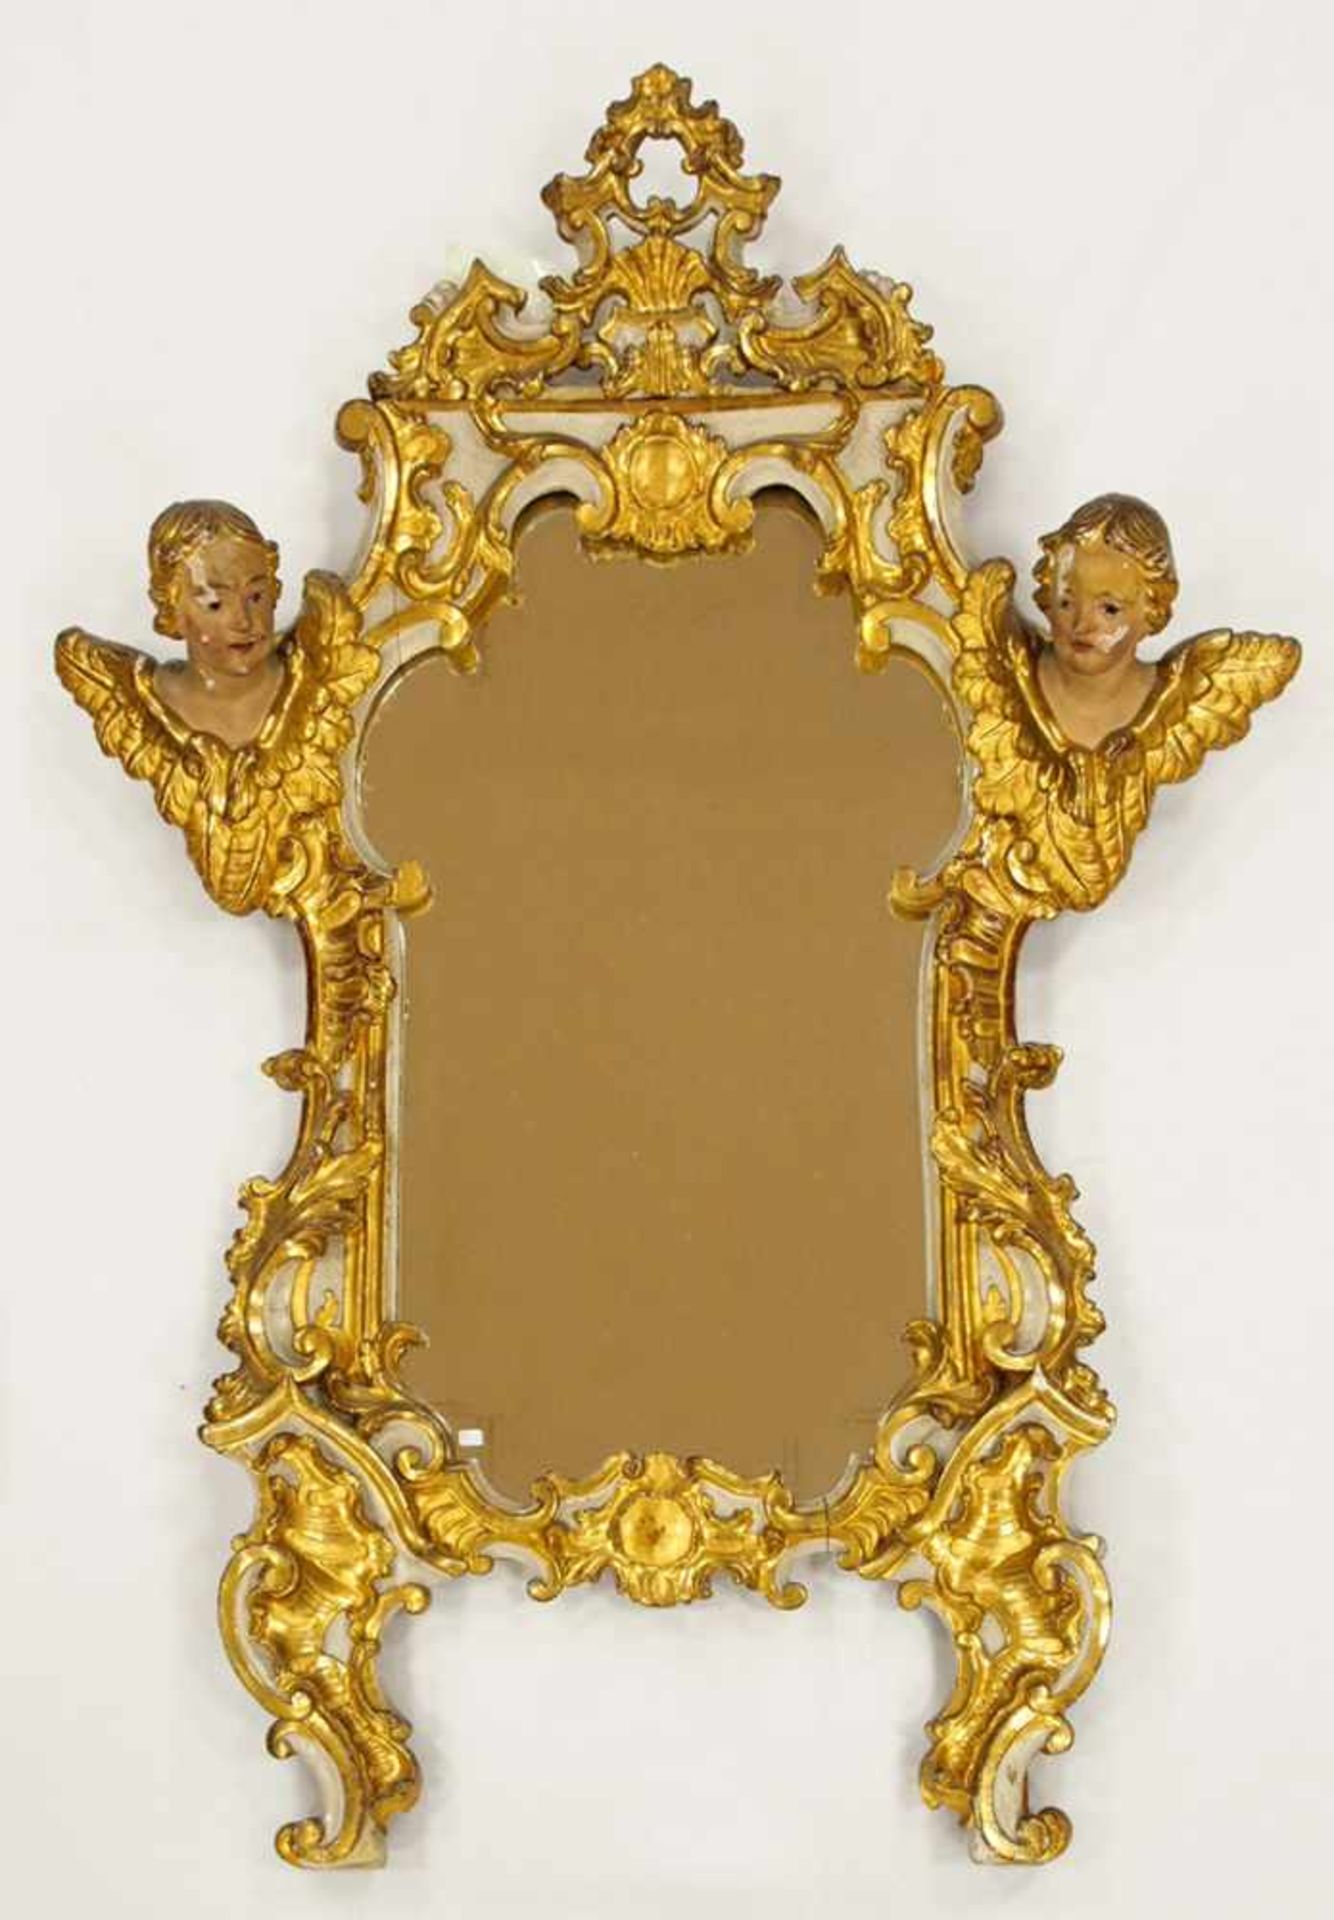 SpiegelRahmen, Holz, geschnitzt, geflügelte Puttenköpfe, ältere Fassung und Vergoldung, darunter